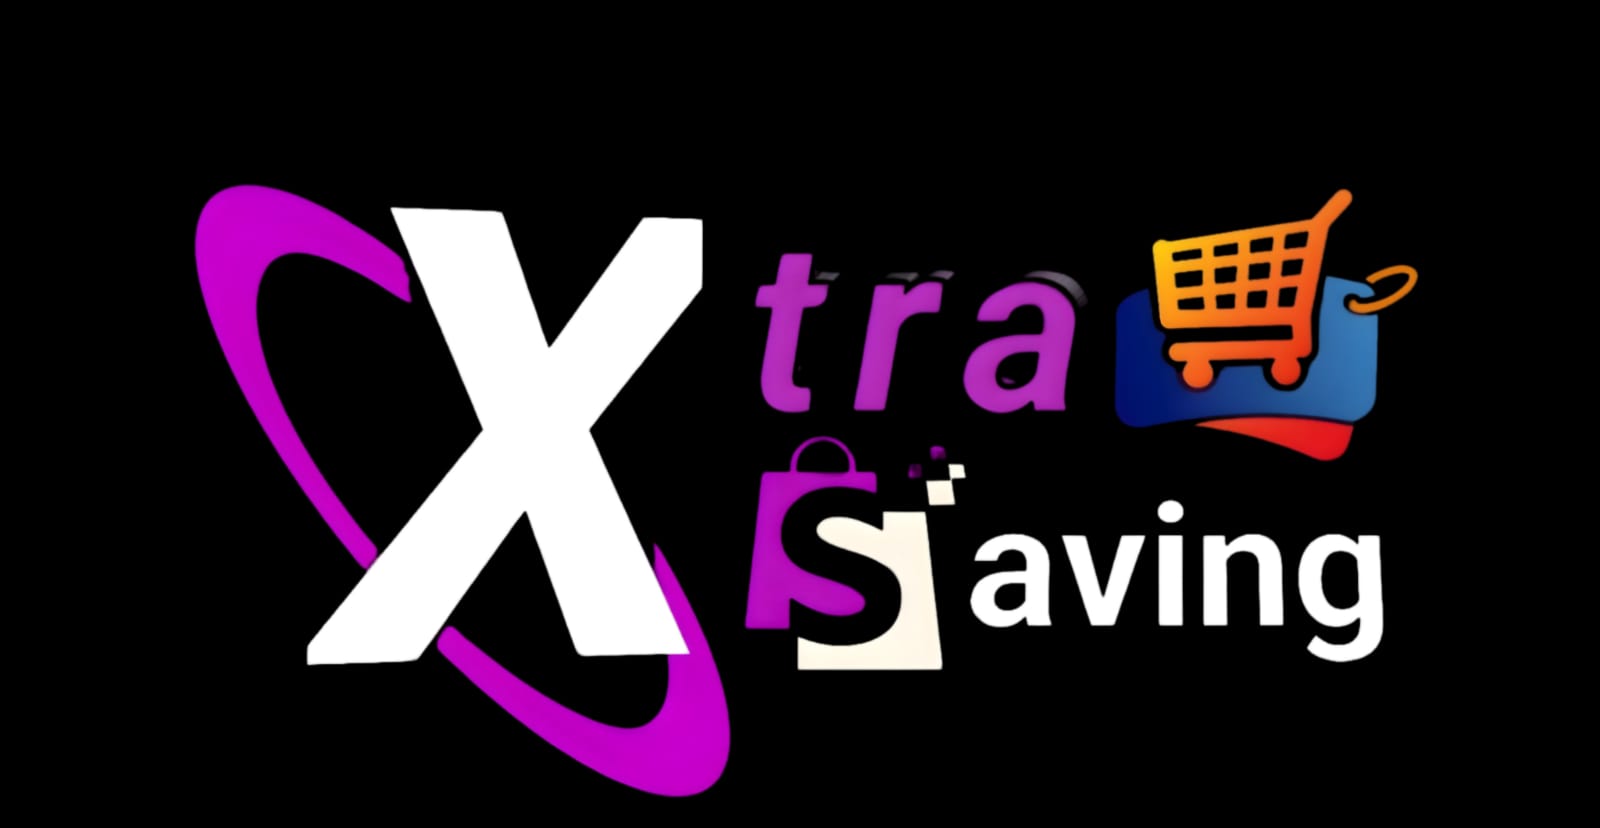 XtraSaving